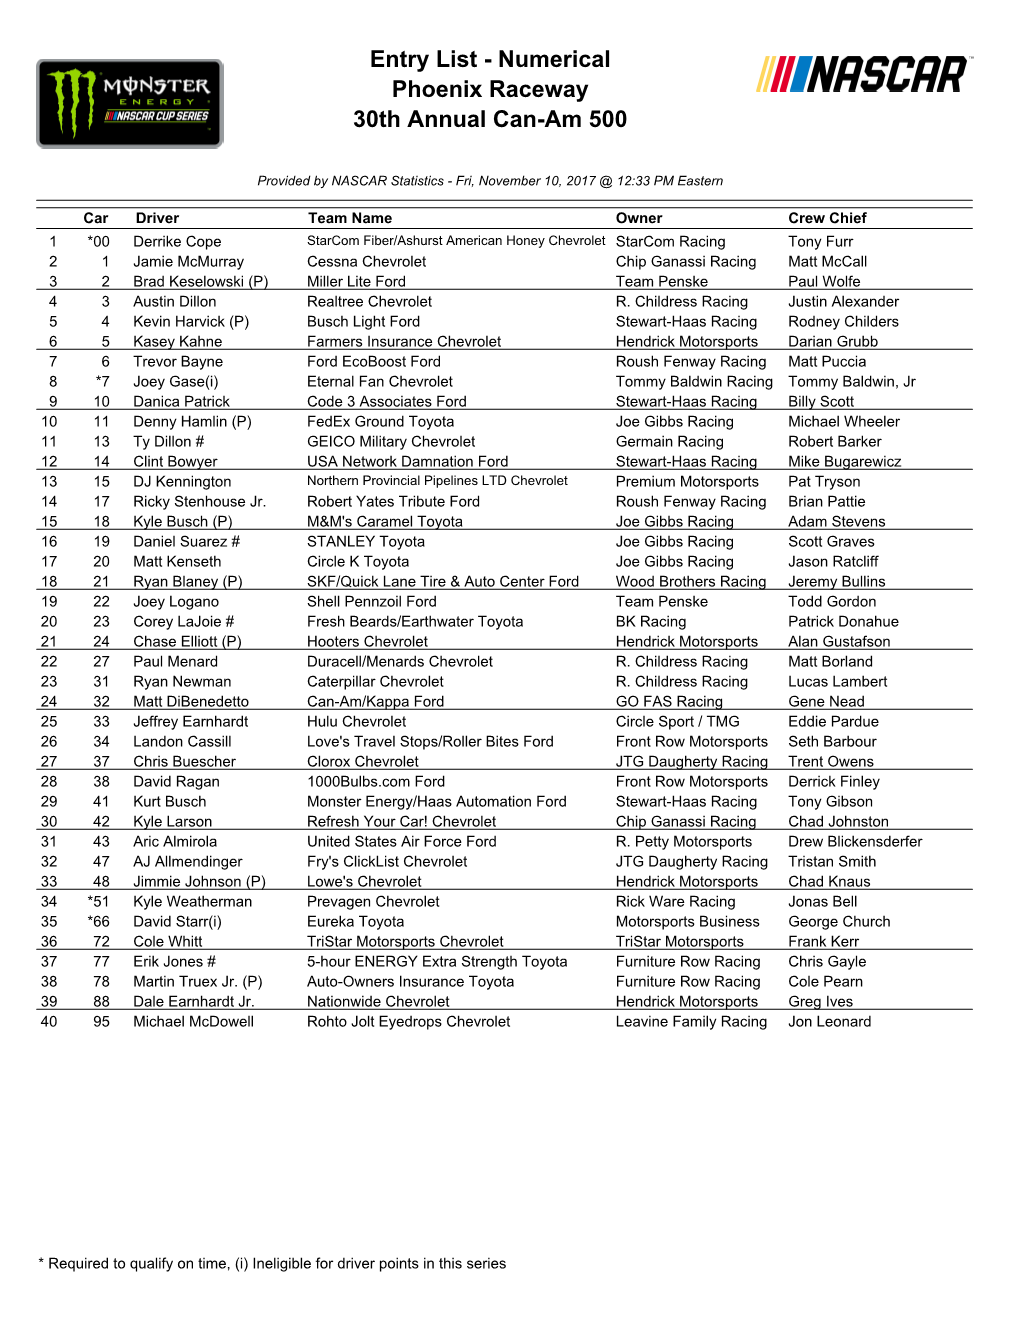 Entry List - Numerical Phoenix Raceway 30Th Annual Can-Am 500